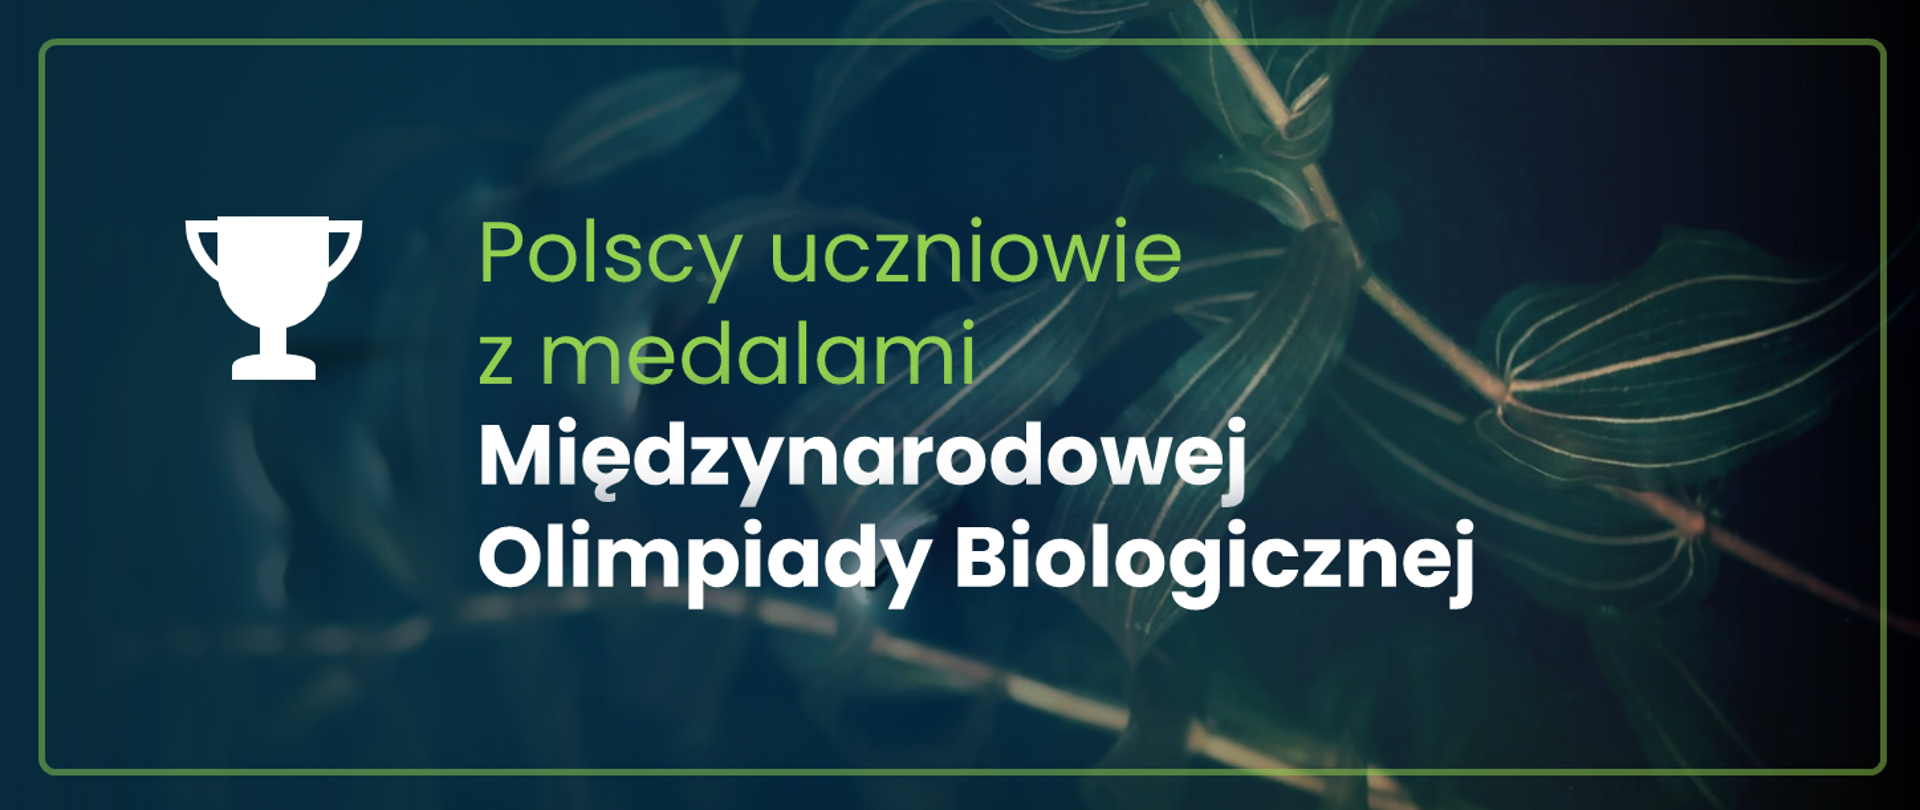 Grafika - na zielonym tle z motywem liści napis Polscy uczniowie z medalami Międzynarodowej Olimpiady Biologicznej.